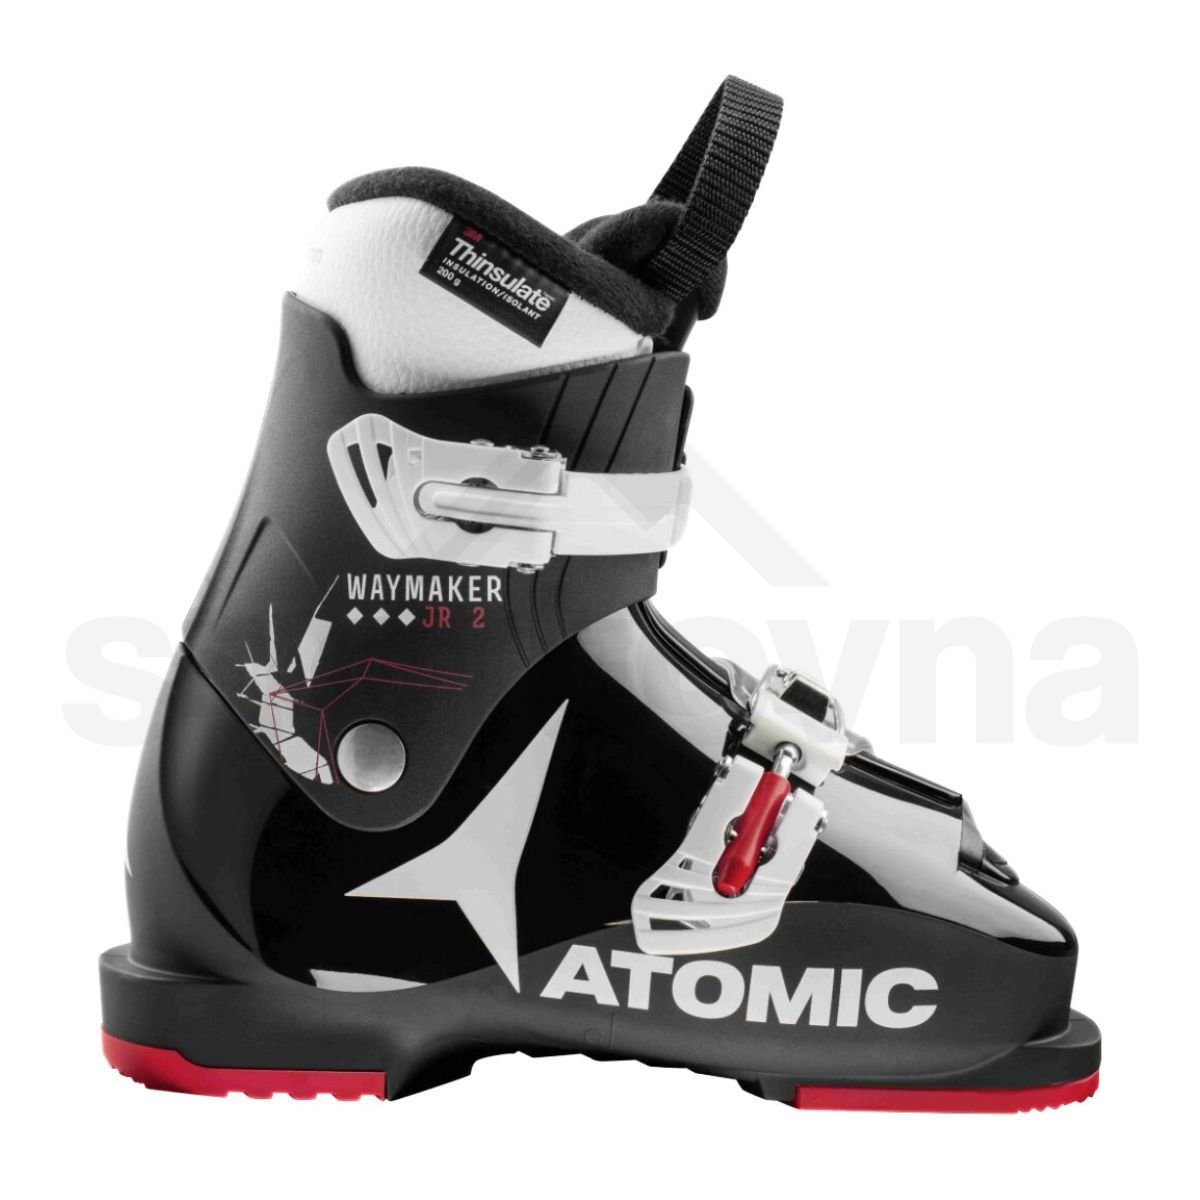 Lyžařské boty Atomic Waymaker JR 2 - černá/bílá